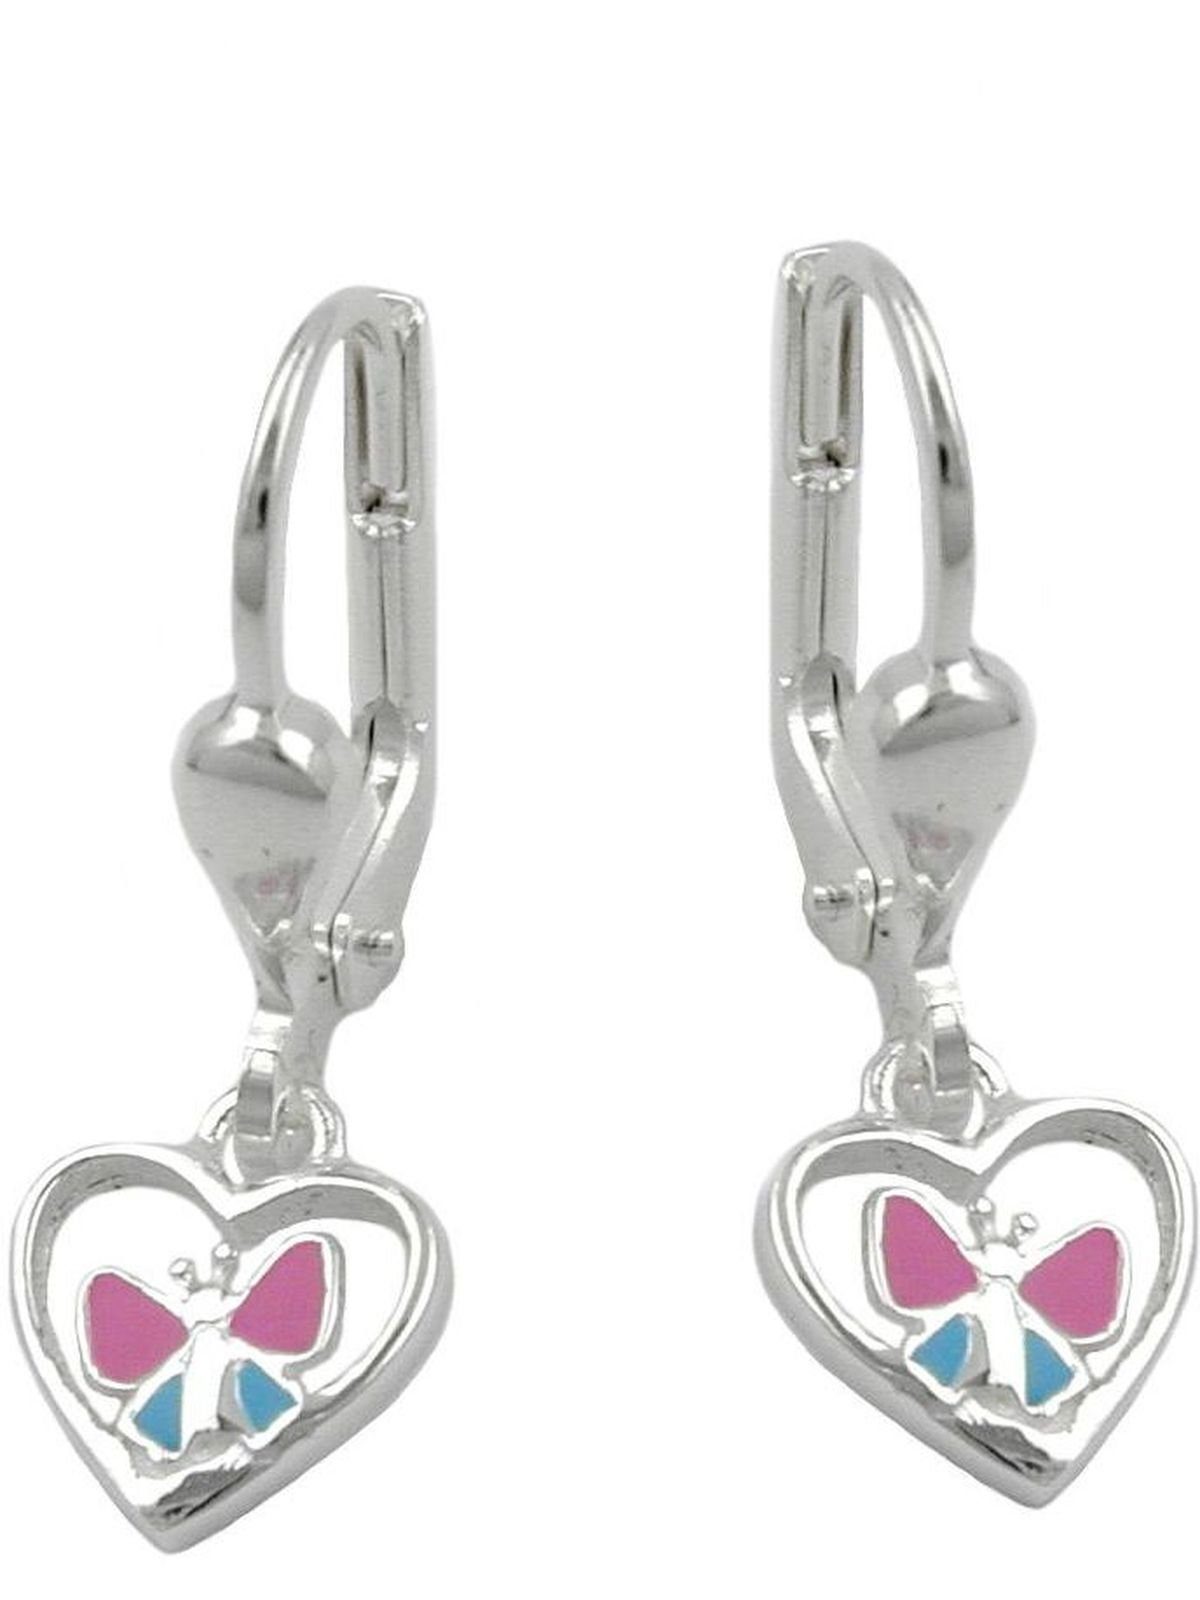 Gallay Paar Ohrhänger Silber hellblau pink Ohrring 23x7mm Herz Schmetterling 925 mit lackiert